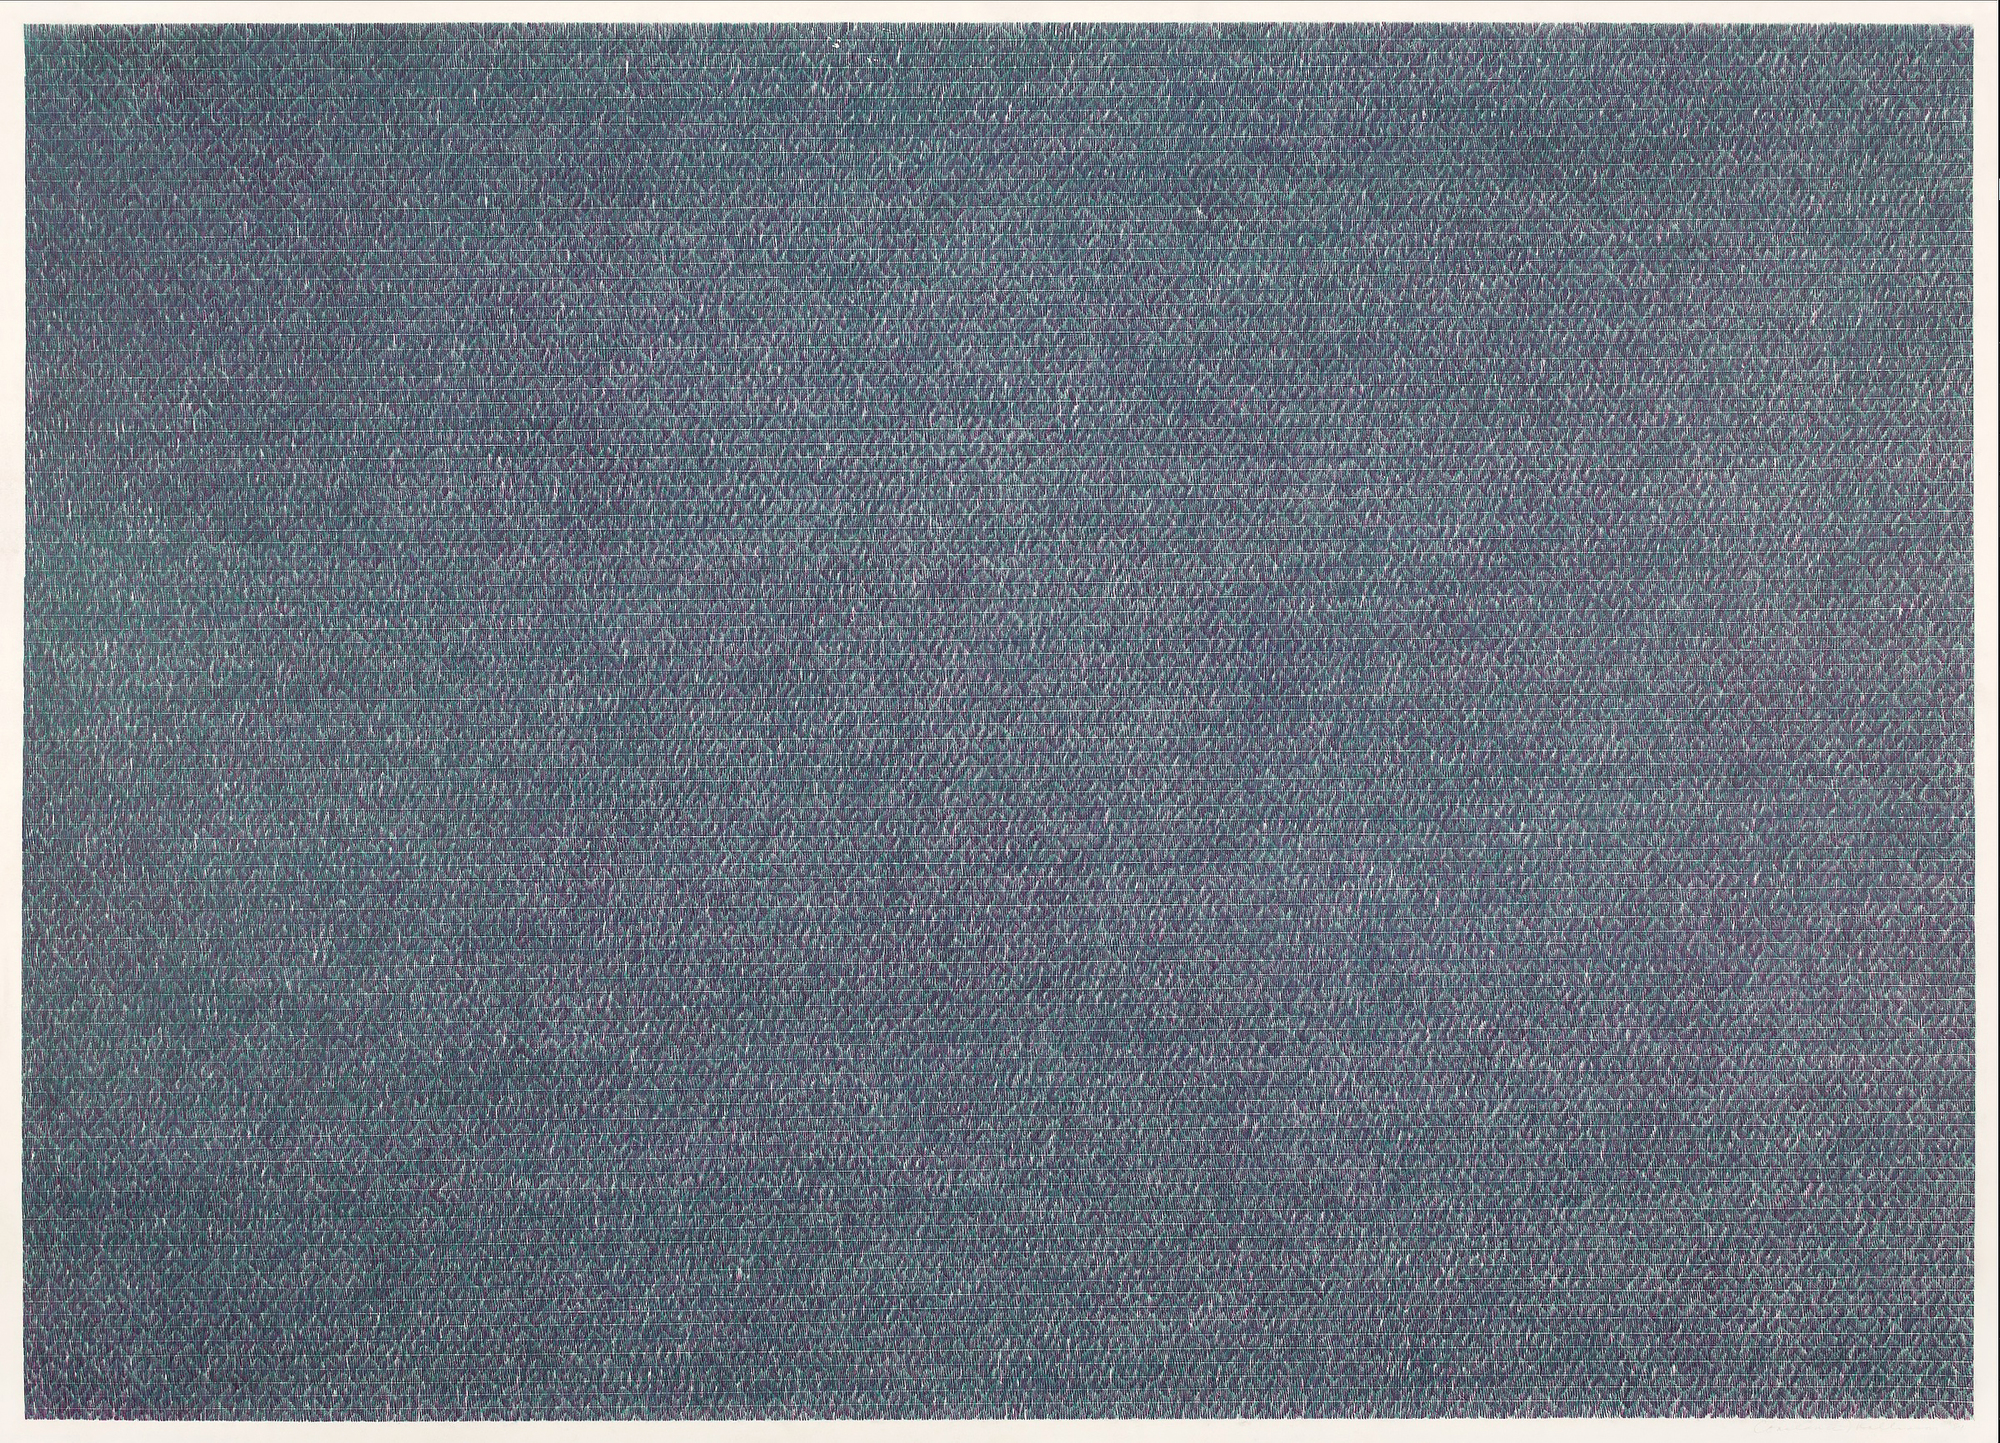 CONSTANCE MALLINSON - Sans titre #12 - crayon de couleur sur papier - 26 x 36 in.